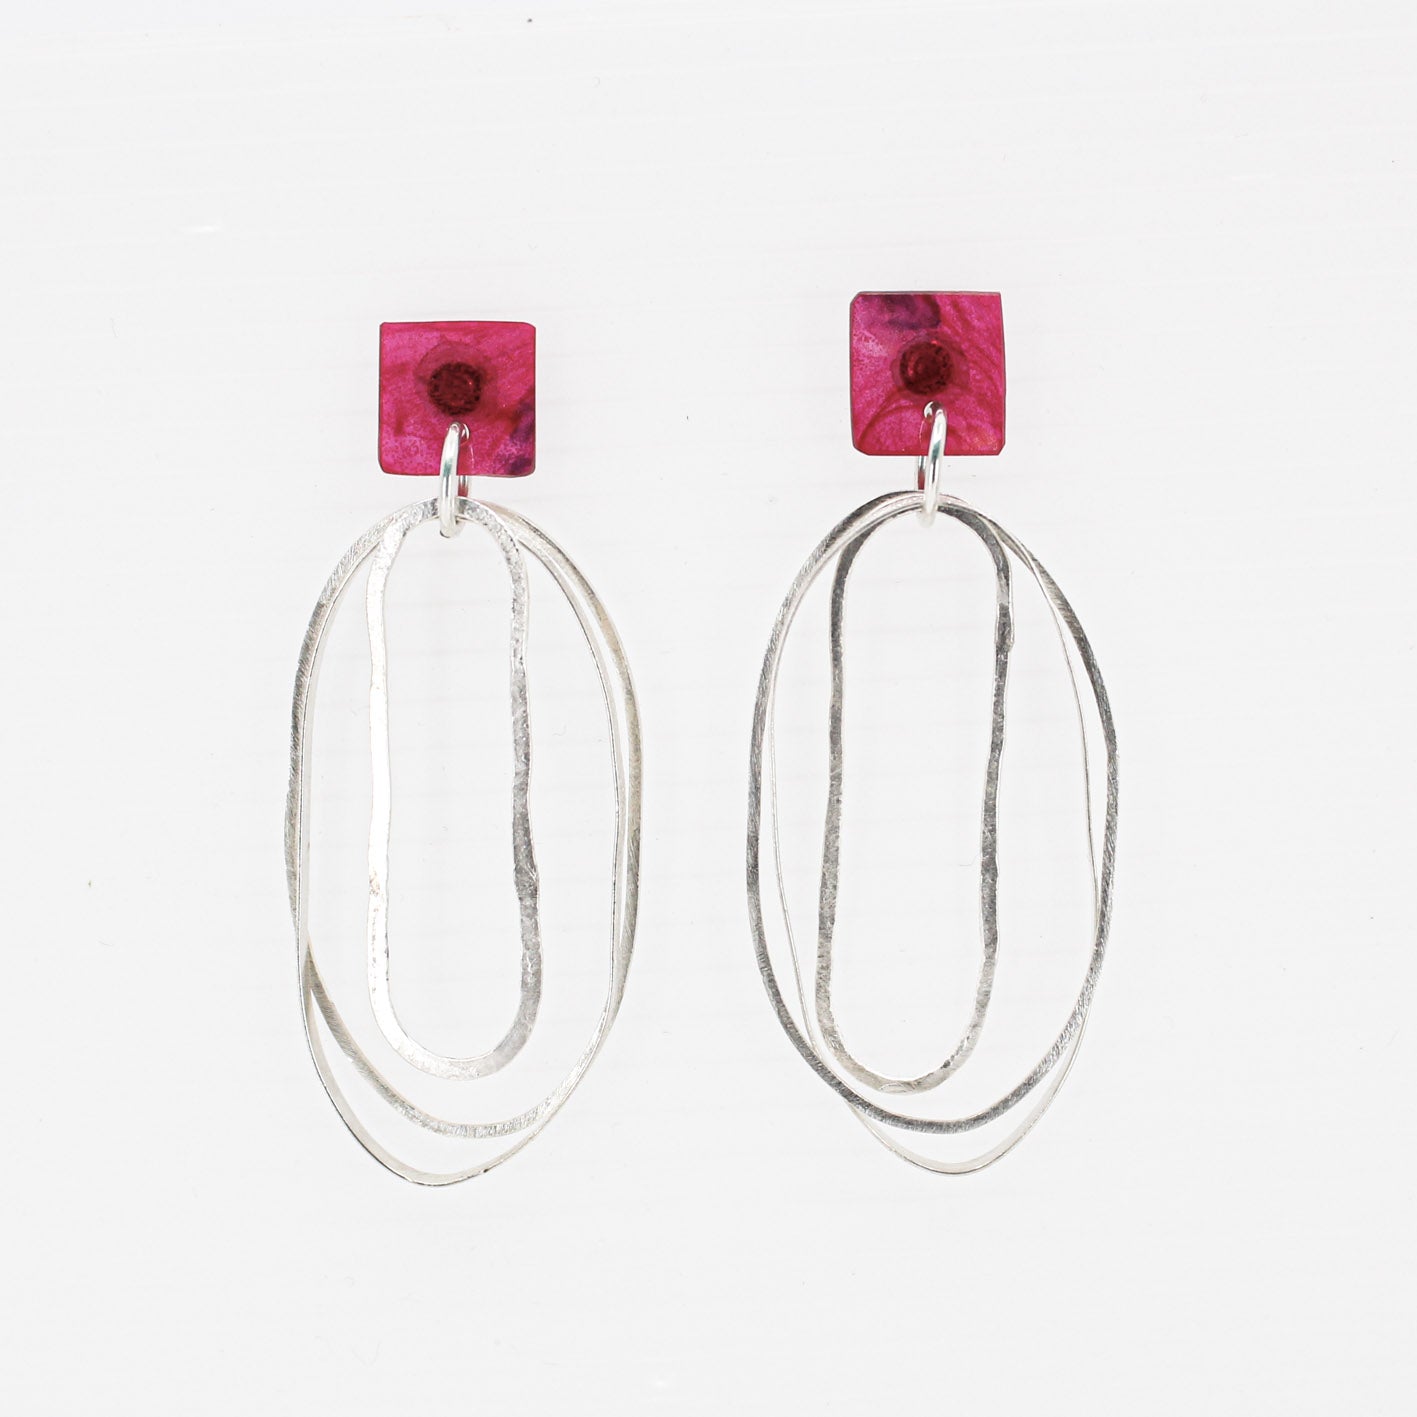 longues boucles d'oreilles pendantes ovales en argent avec dessus carré en résine rose